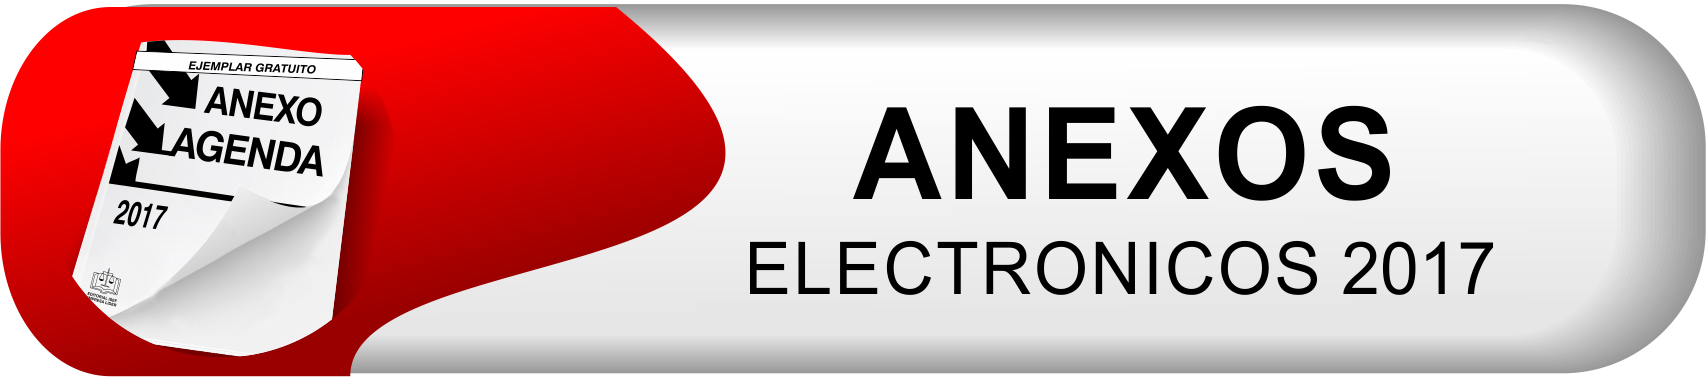 boton anexos electr17.png